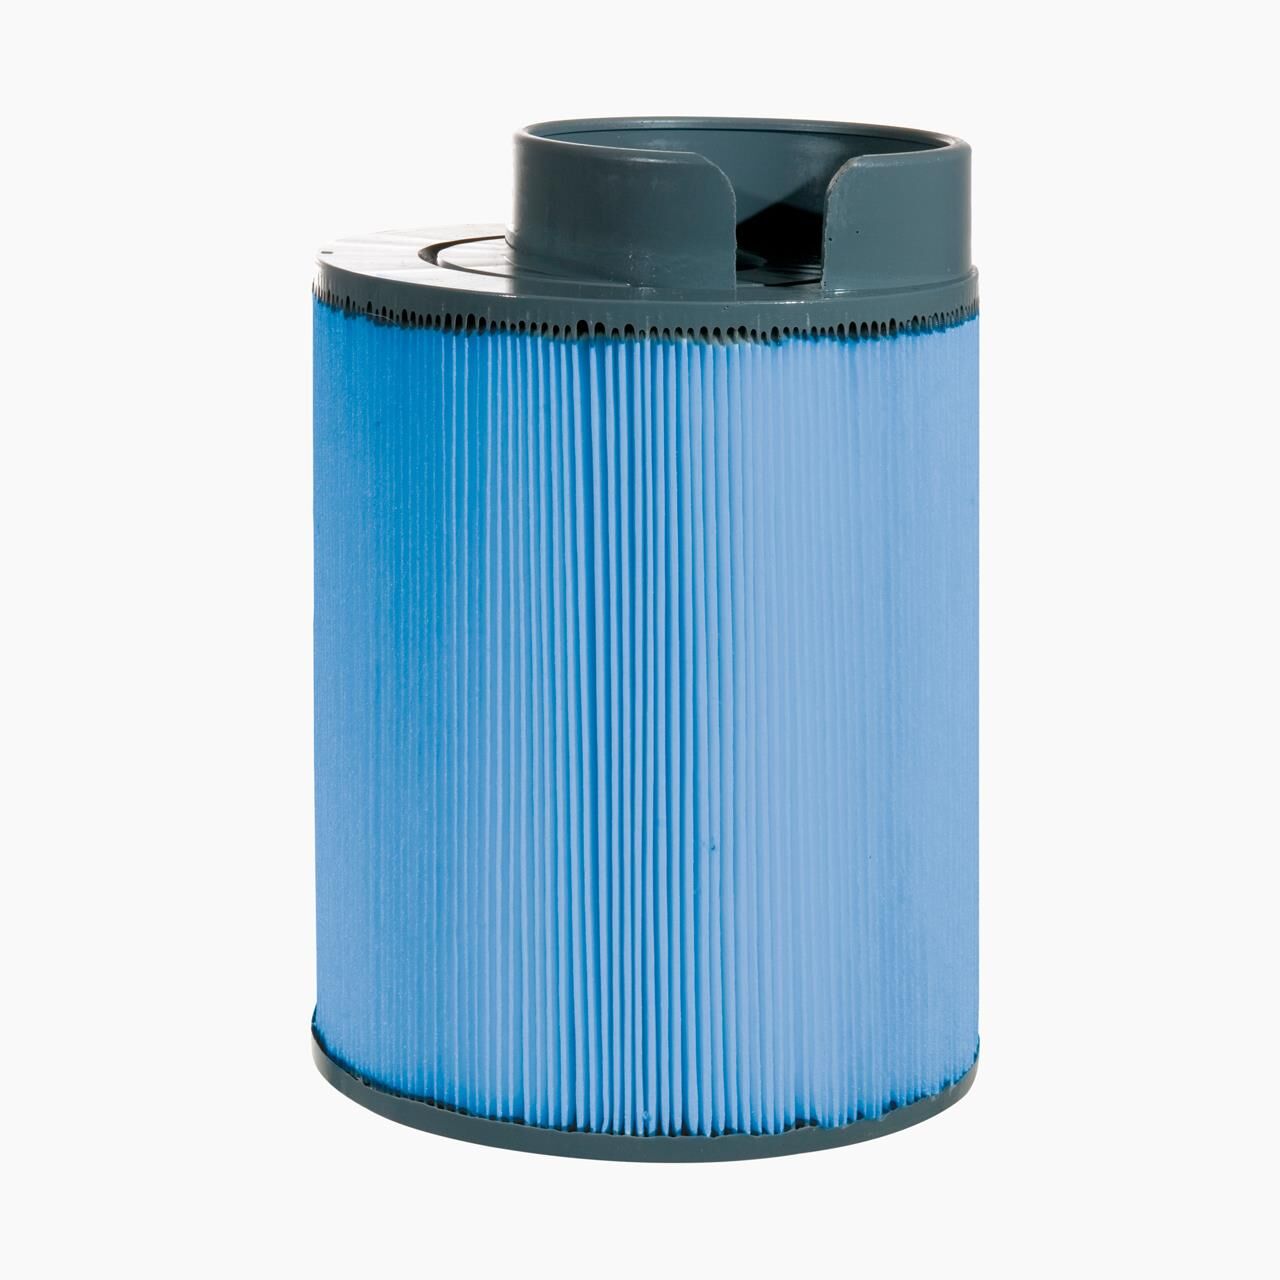 Filter SNAP ON für Softub Whirlpools BIS 2009 - antibakterieller Filter - 22 x 15 cm